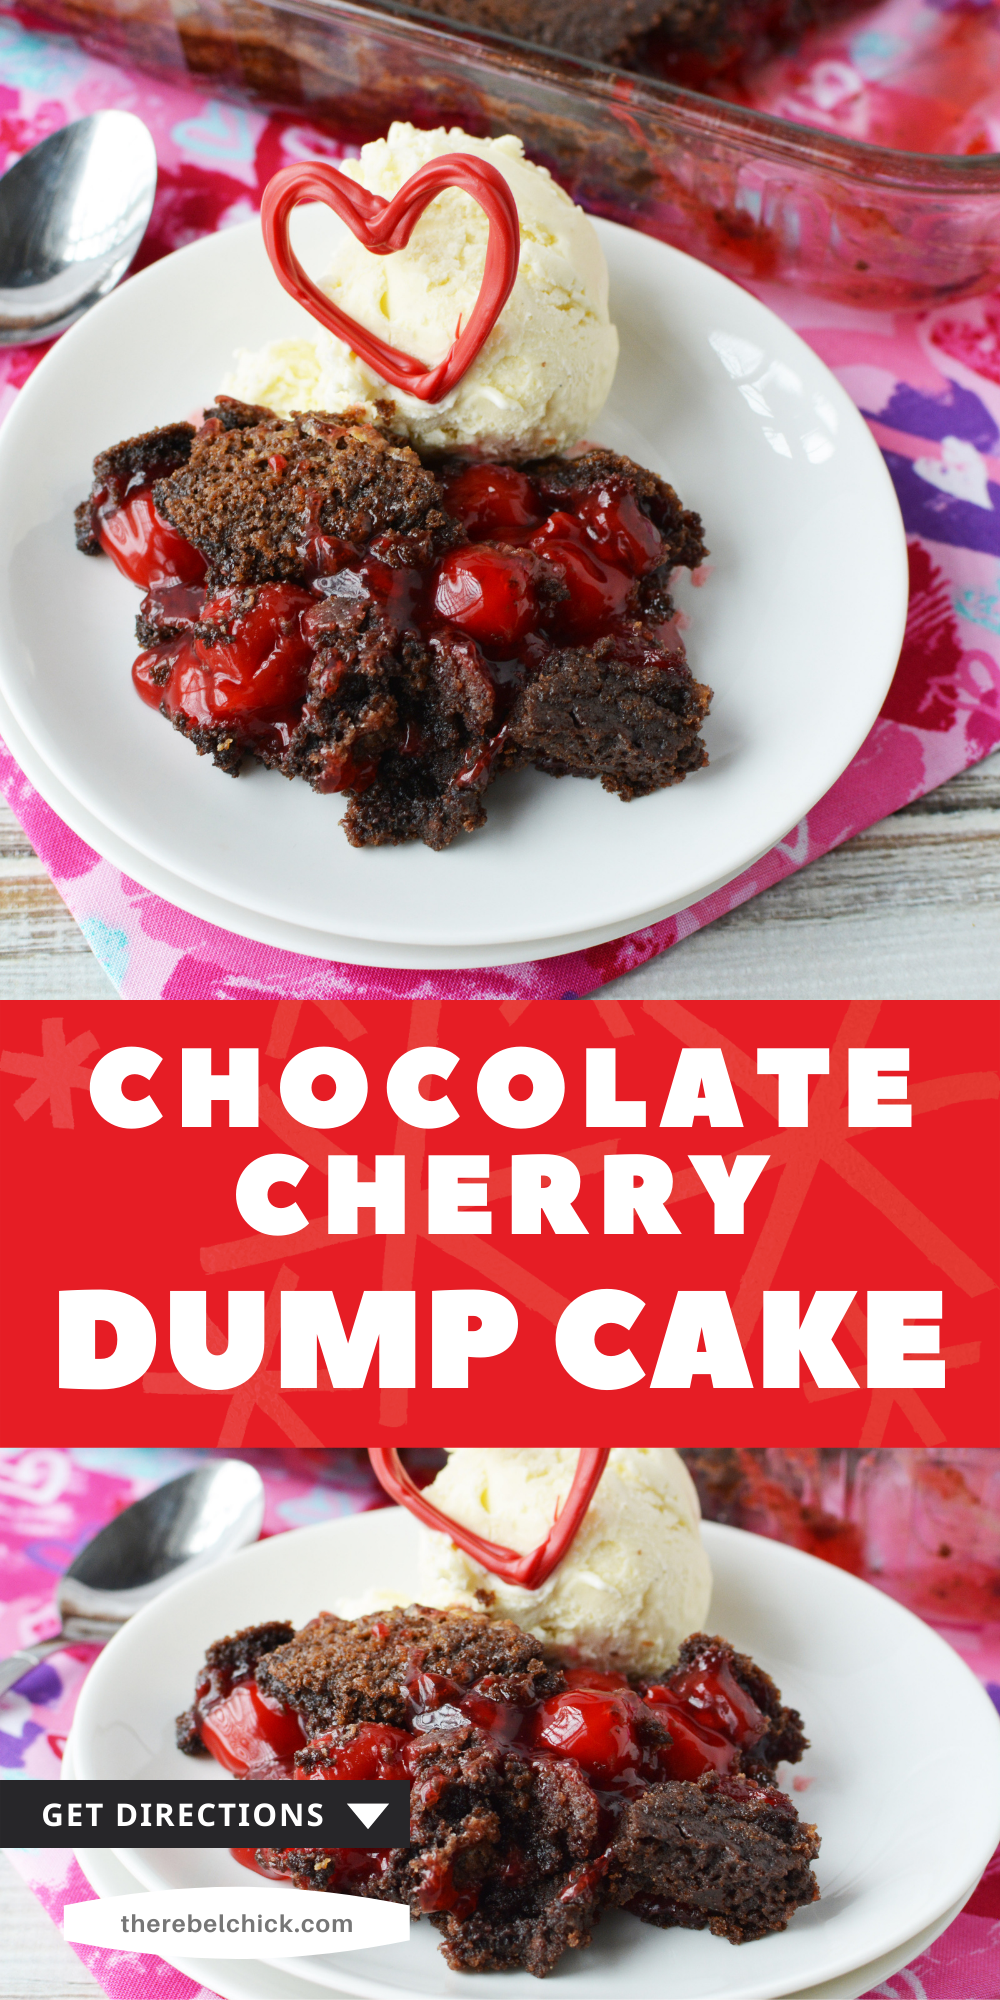 Chocolate Dump Cake with Cherries Recipe